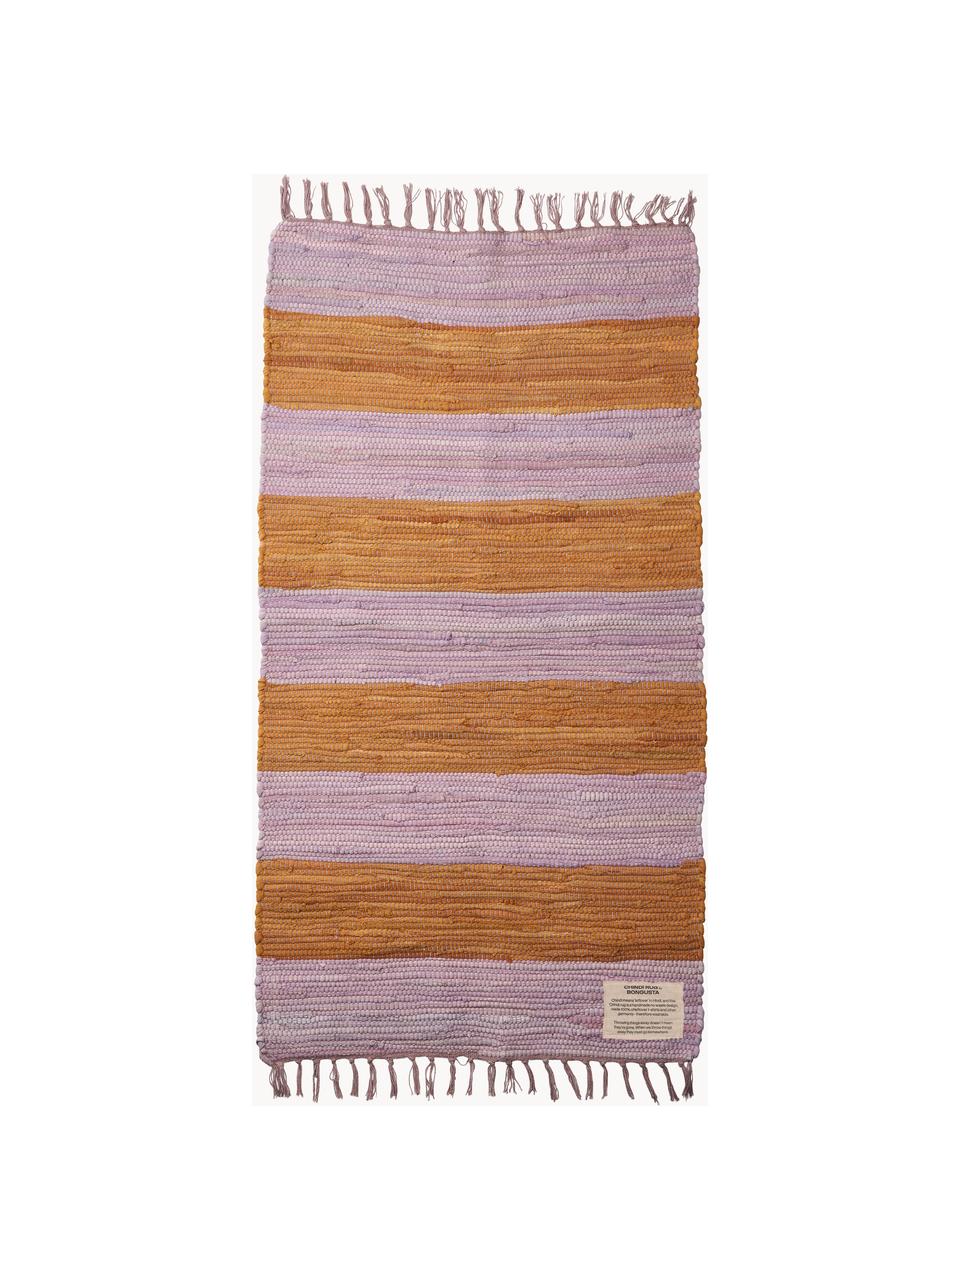 Ręcznie tkany chodnik z bawełny z frędzlami Chindi, 100% bawełna, Lawendowy, pomarańczowy, S 60 x D 120 cm